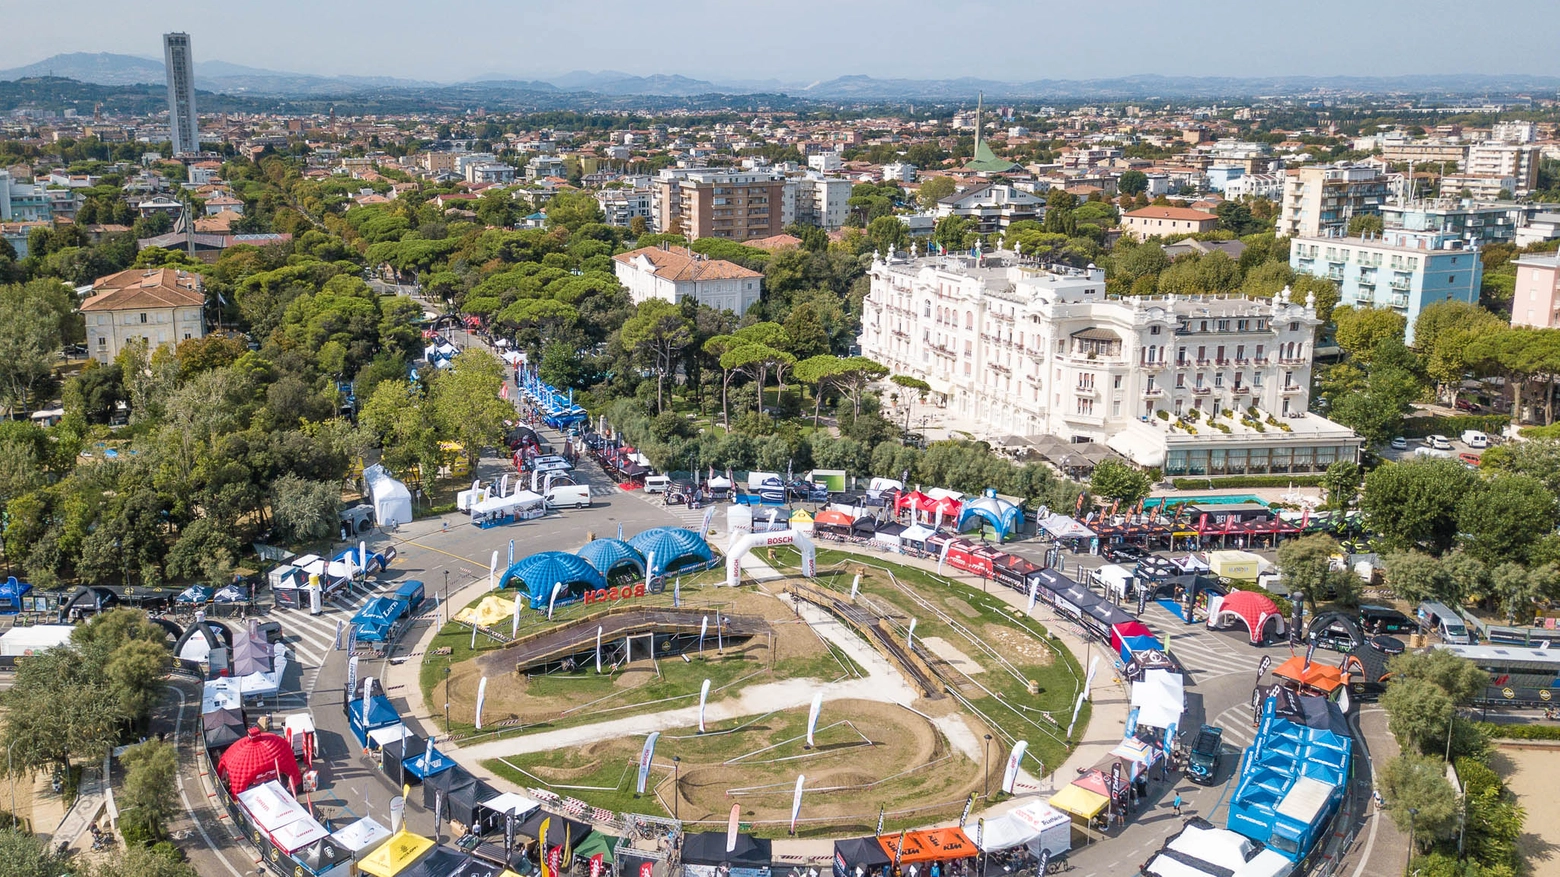 La prima edizione dell'Italian bike festival nel 2019